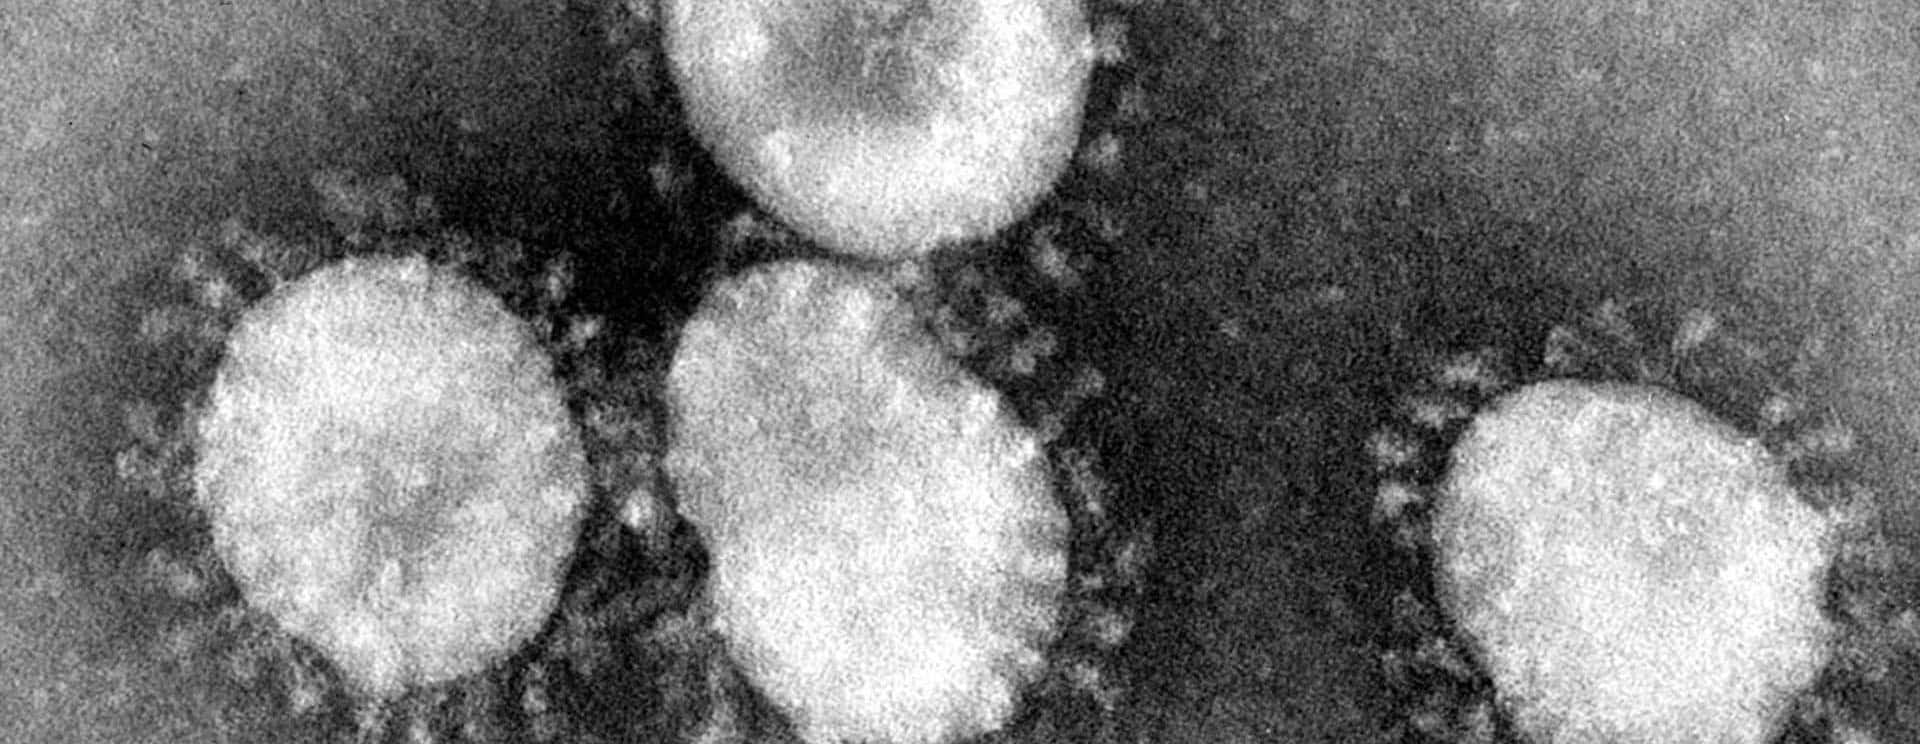 coronaviruses-jpg-79